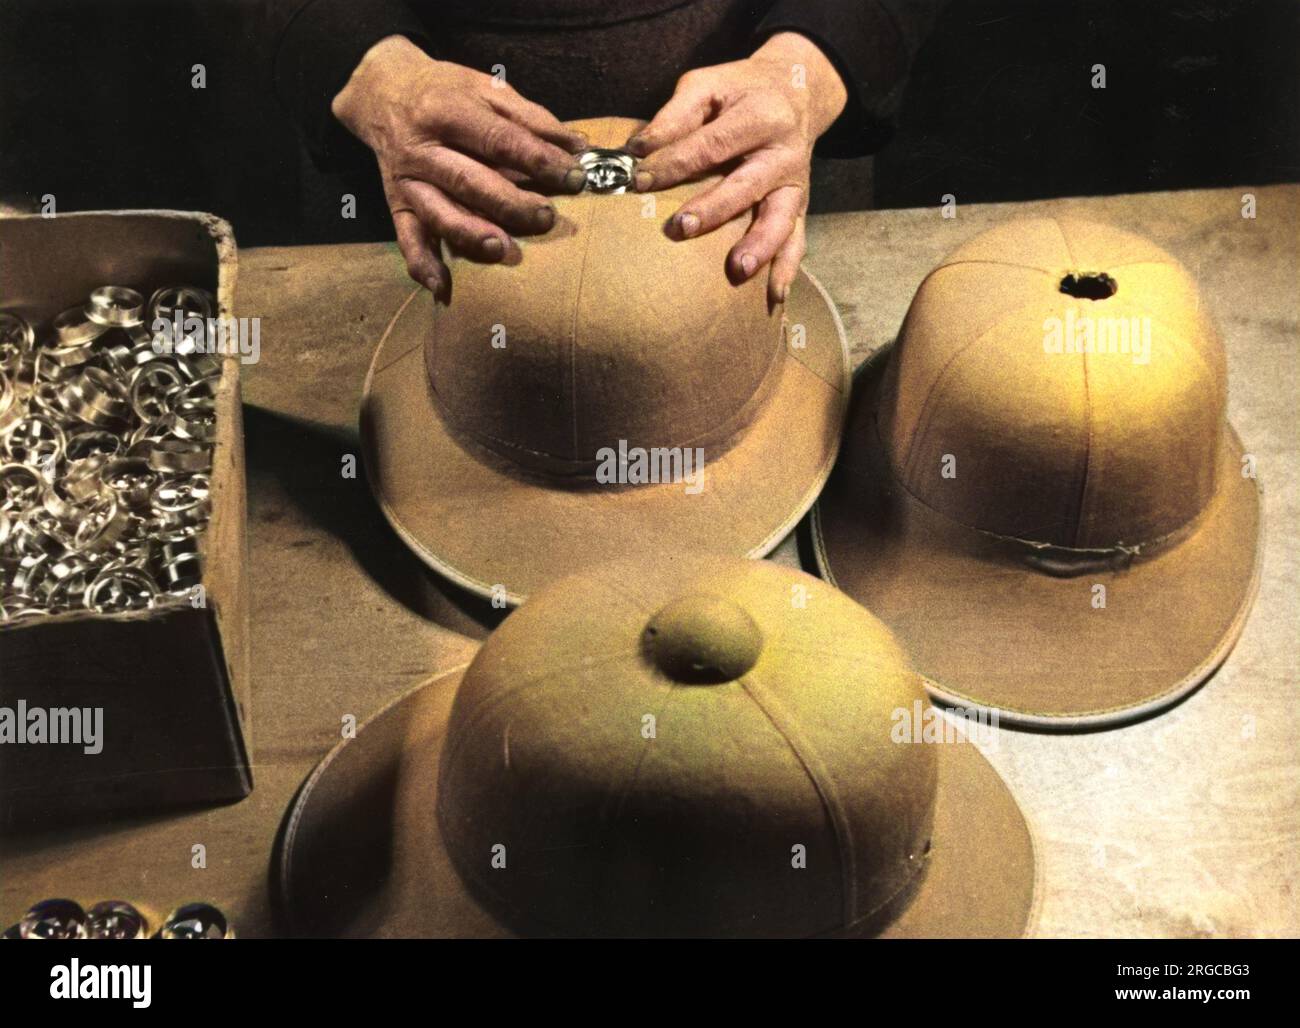 Fabrication de casques de type I pour l'Afrika Korps allemande - Seconde Guerre mondiale. Insertion du capuchon de ventilation sur le dessus du casque. Banque D'Images